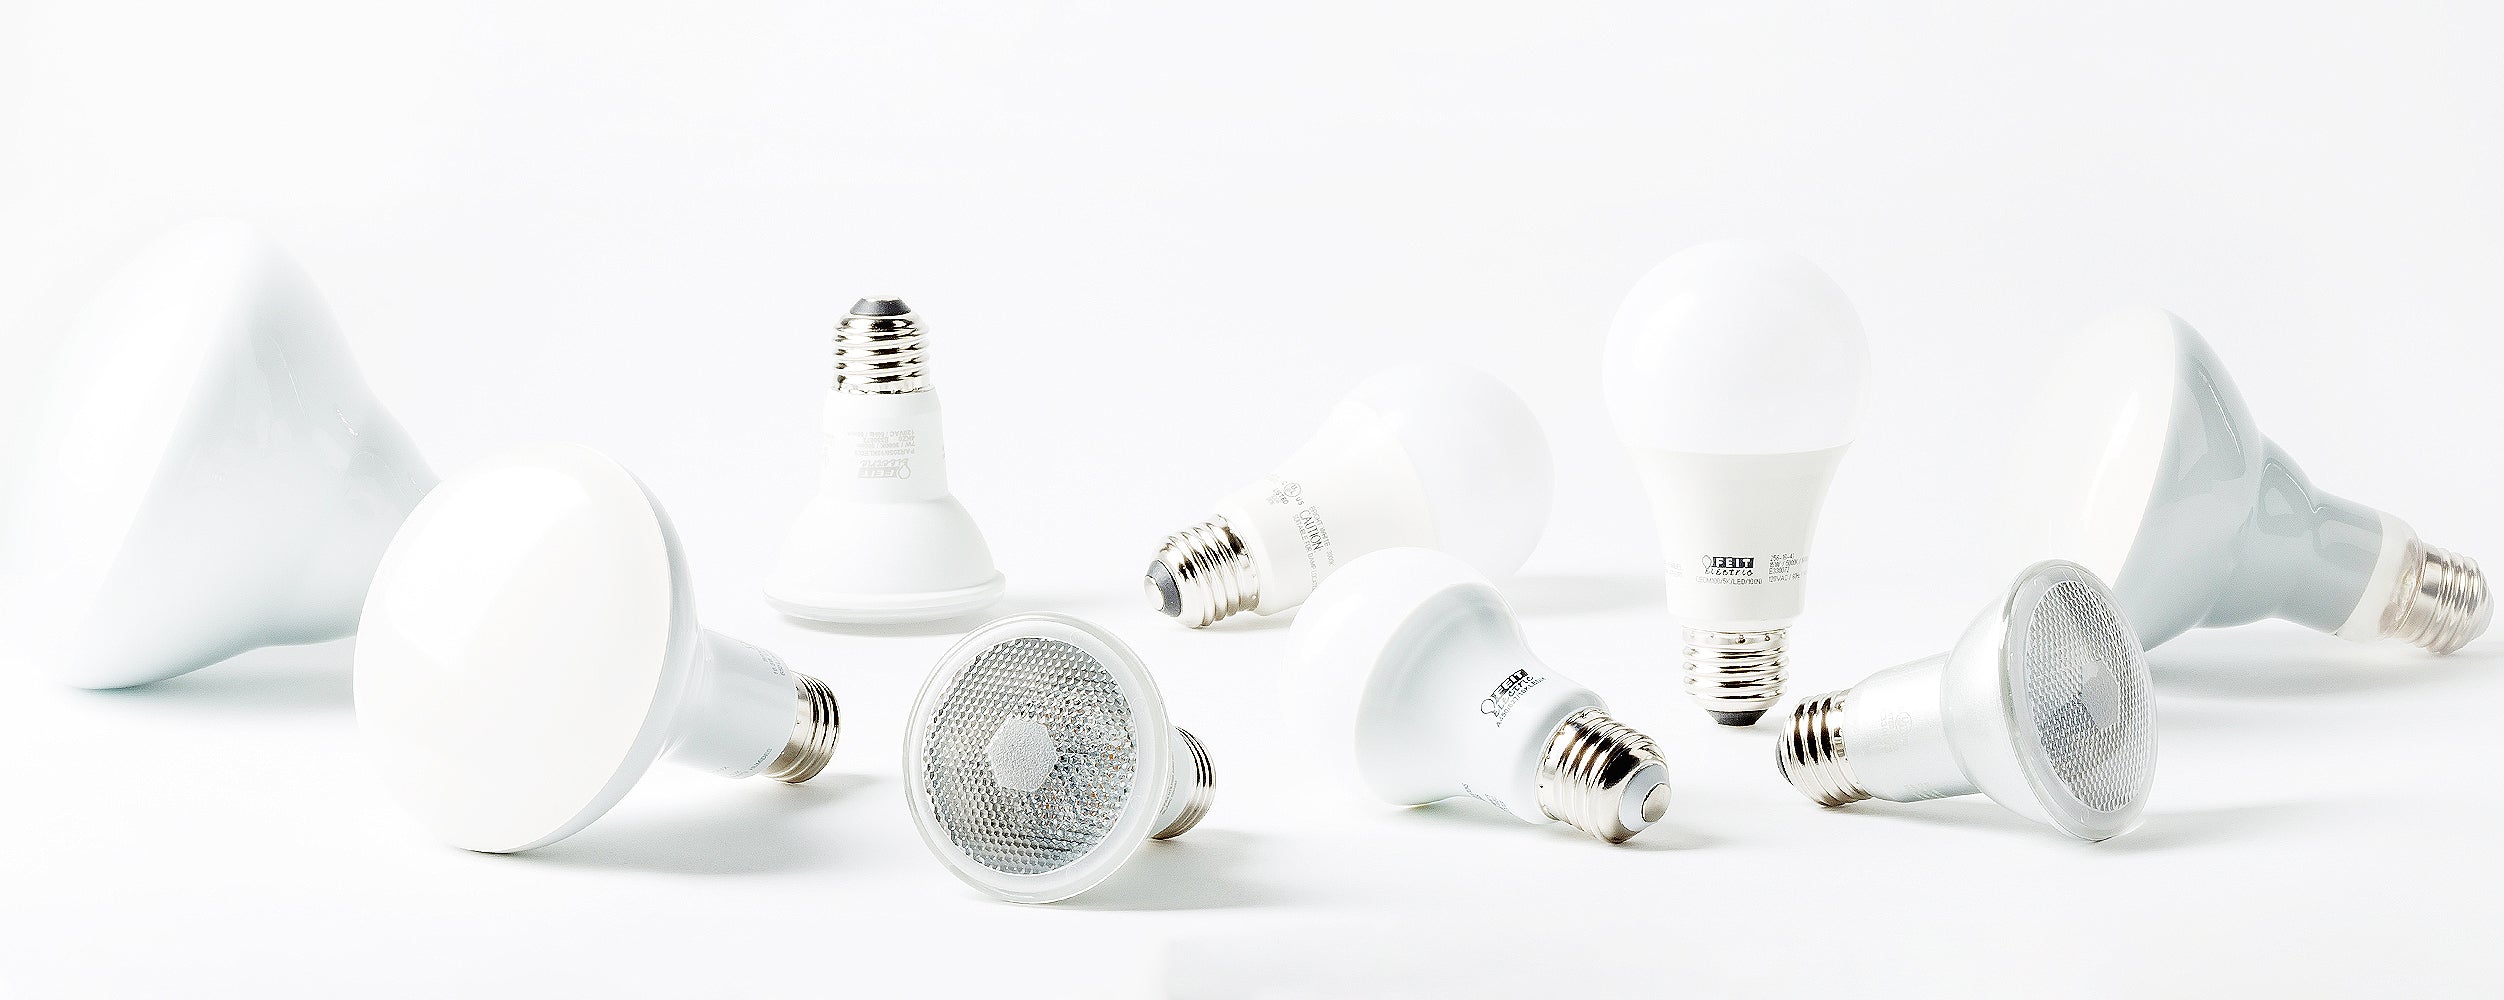 Ampoules de veilleuse Feit Electric à DEL transparentes (2/pqt